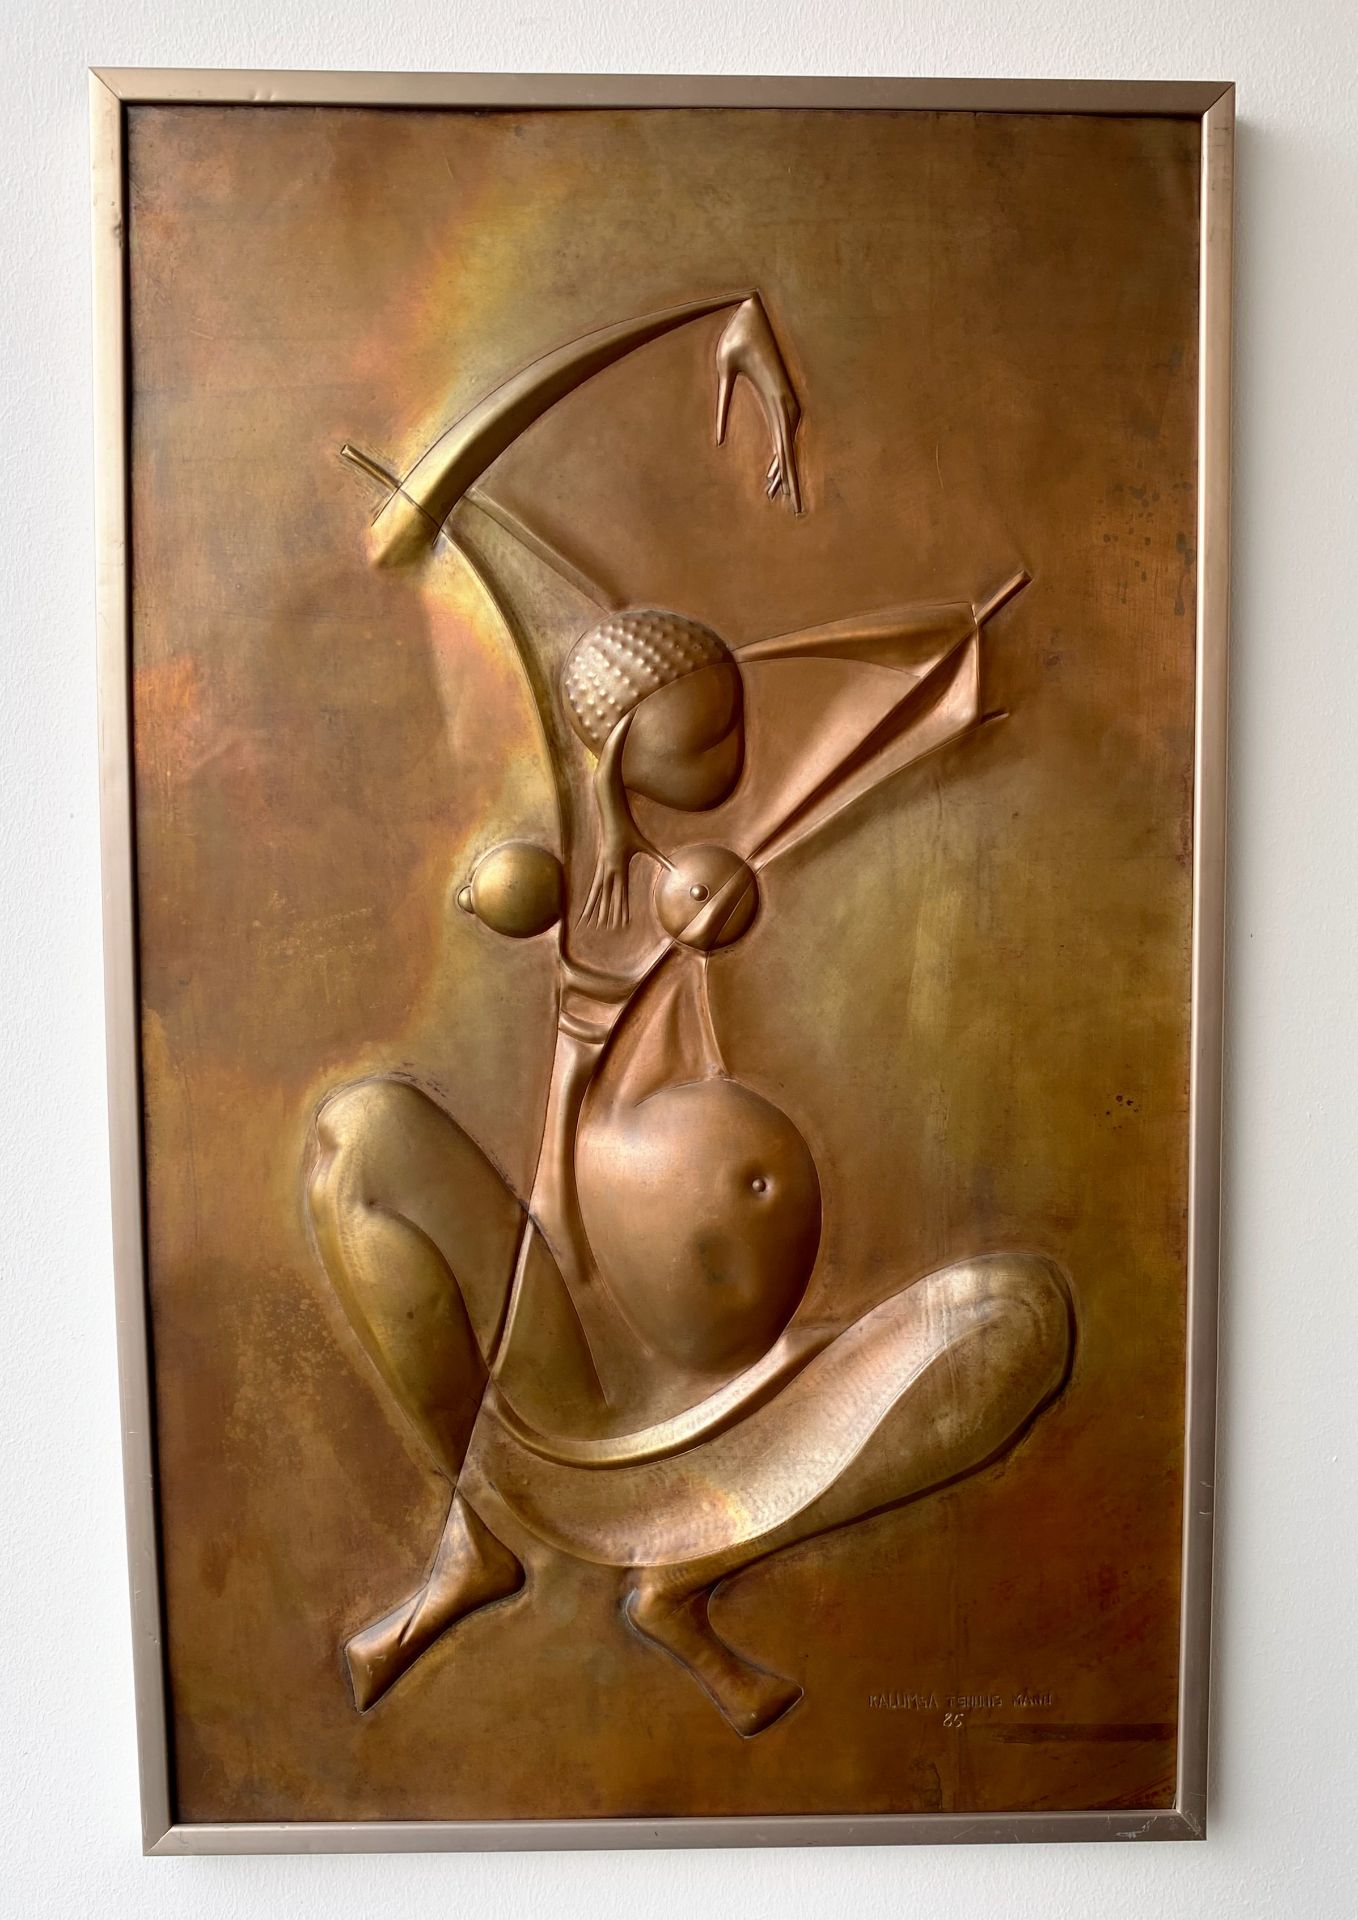 Tableau plaque cuivre 'La Fertilité' gravé Kalumba Tshung Manu